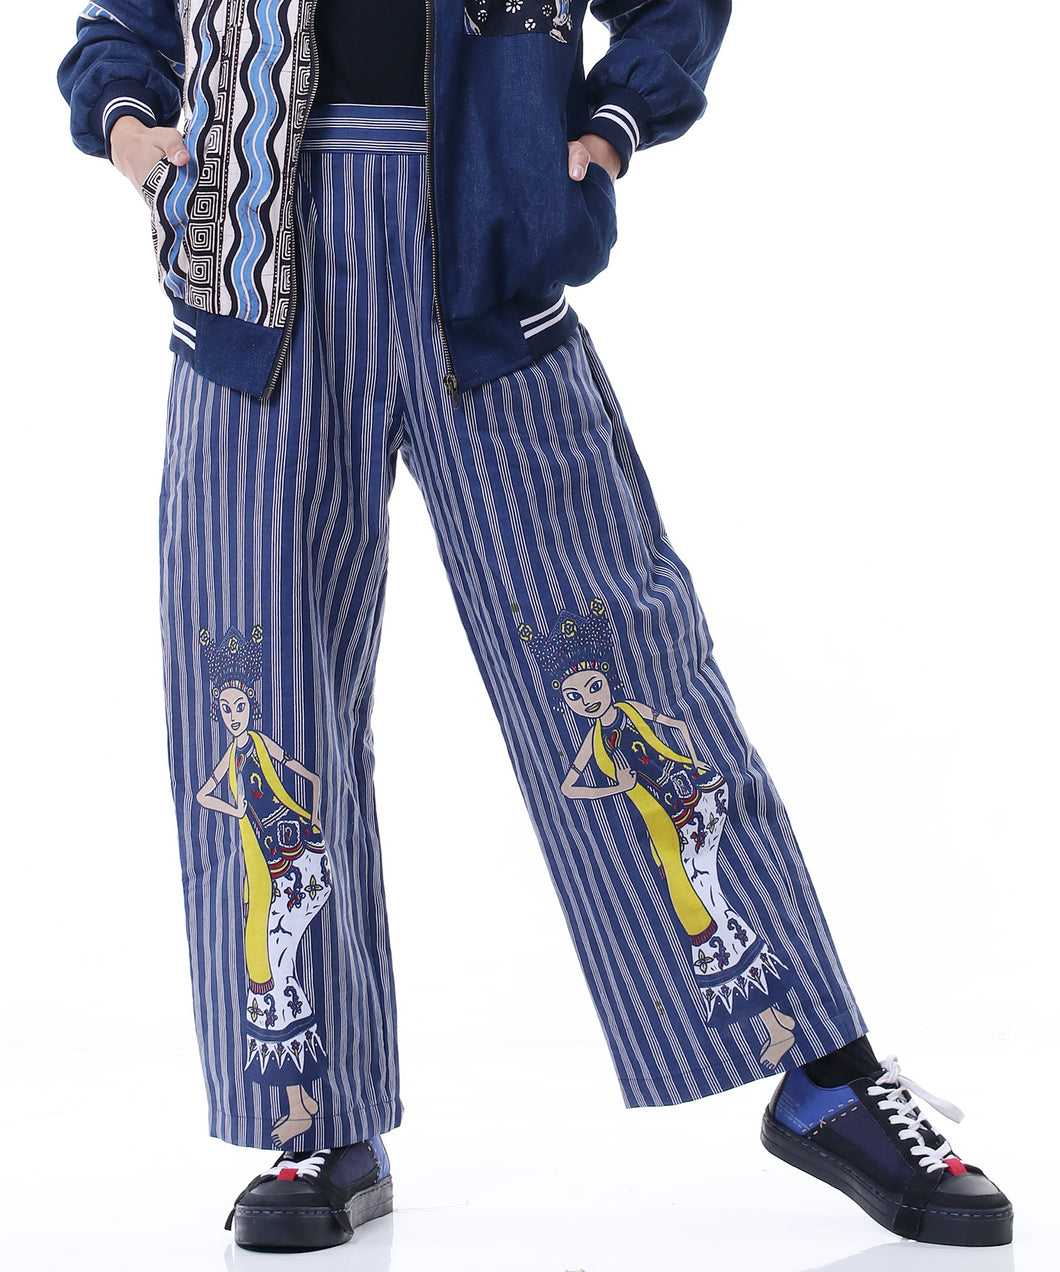 Lulu Stripe pants